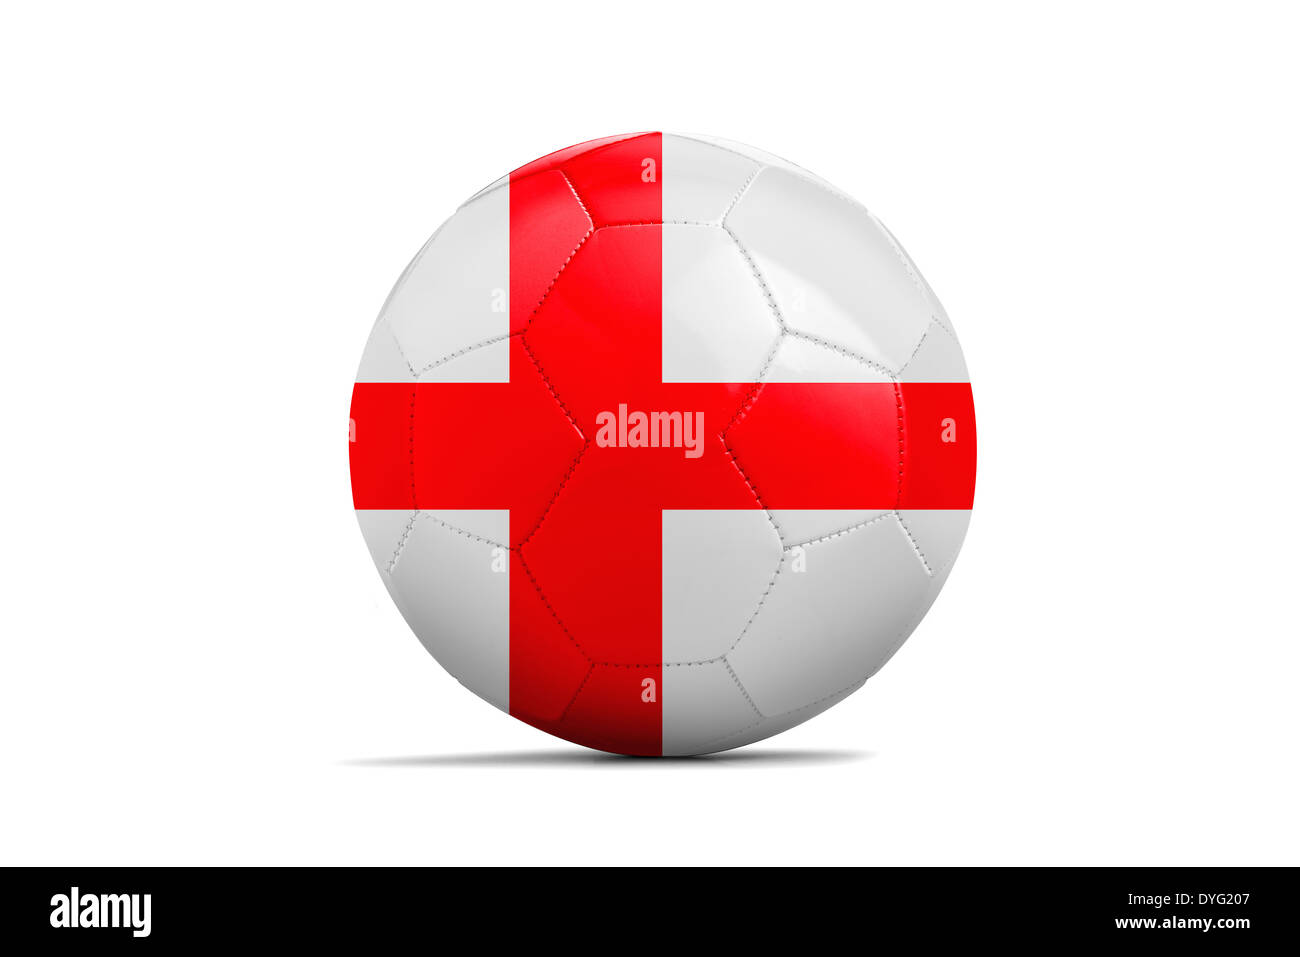 Des ballons de foot avec des équipes de football Brésil drapeaux, 2014. Groupe D, Angleterre Banque D'Images